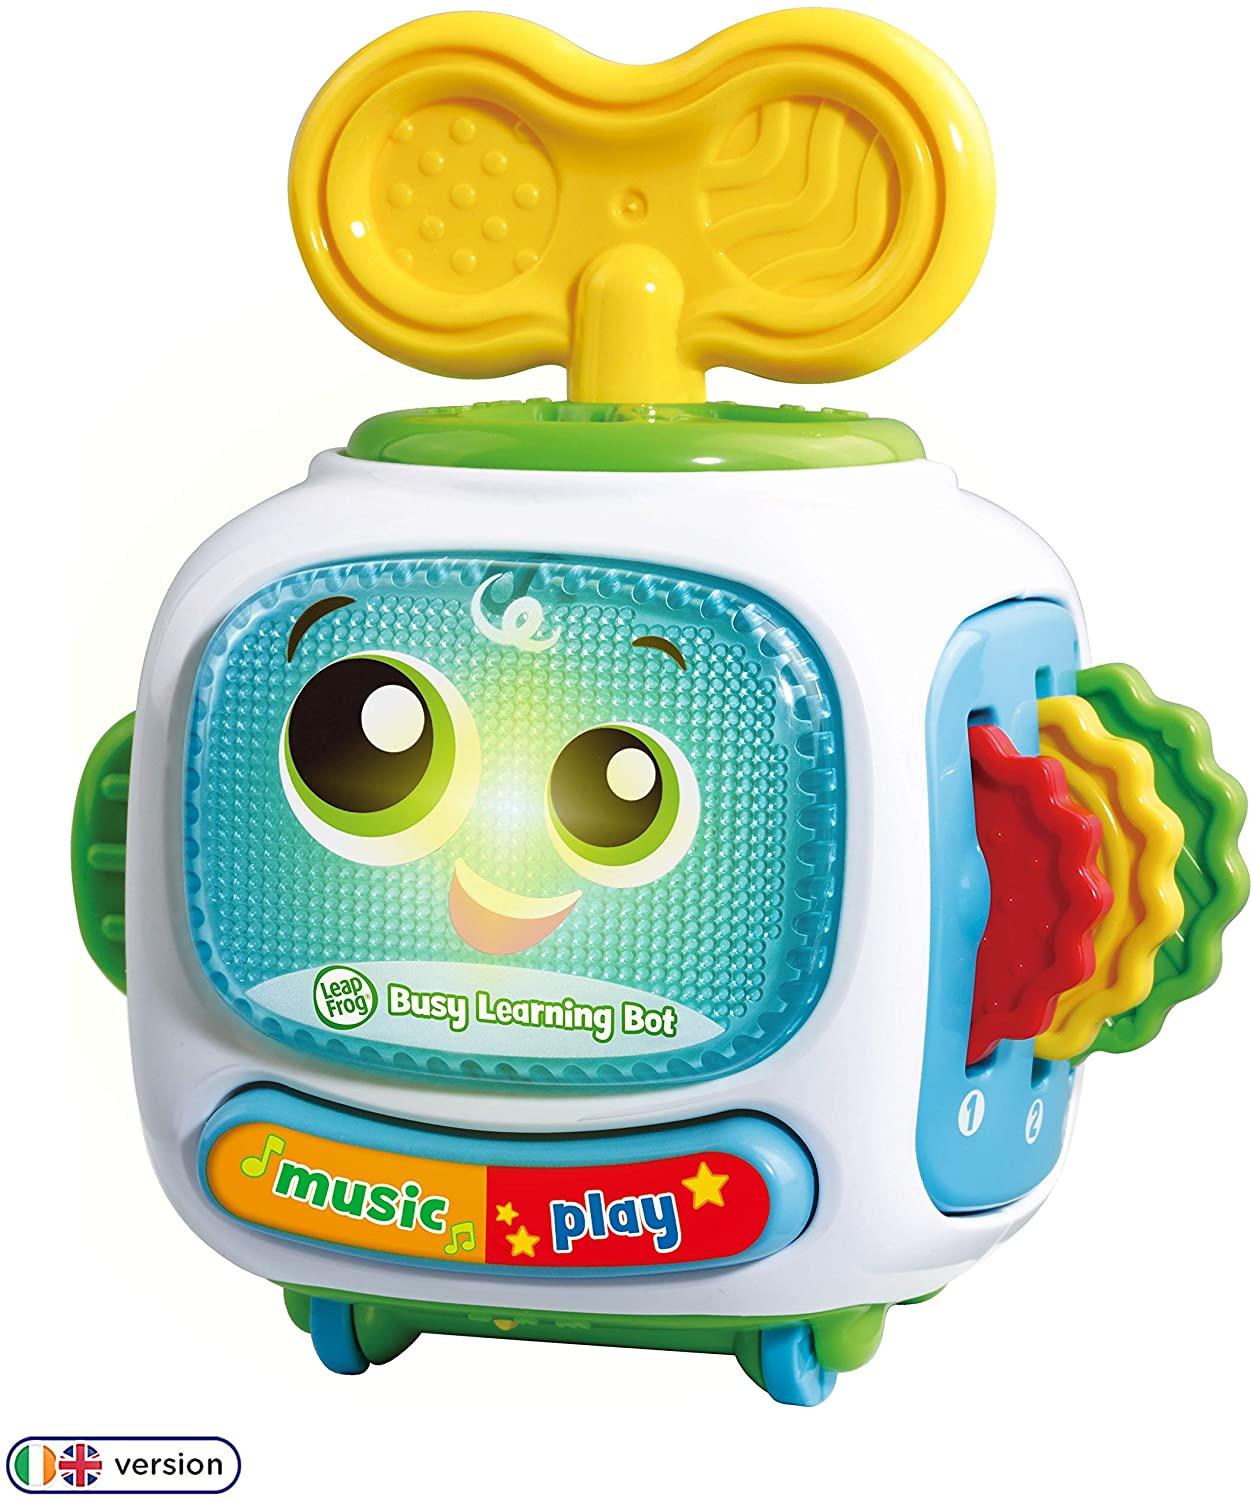 Leapfrog Busy Learning Bot Toymaster Ballina